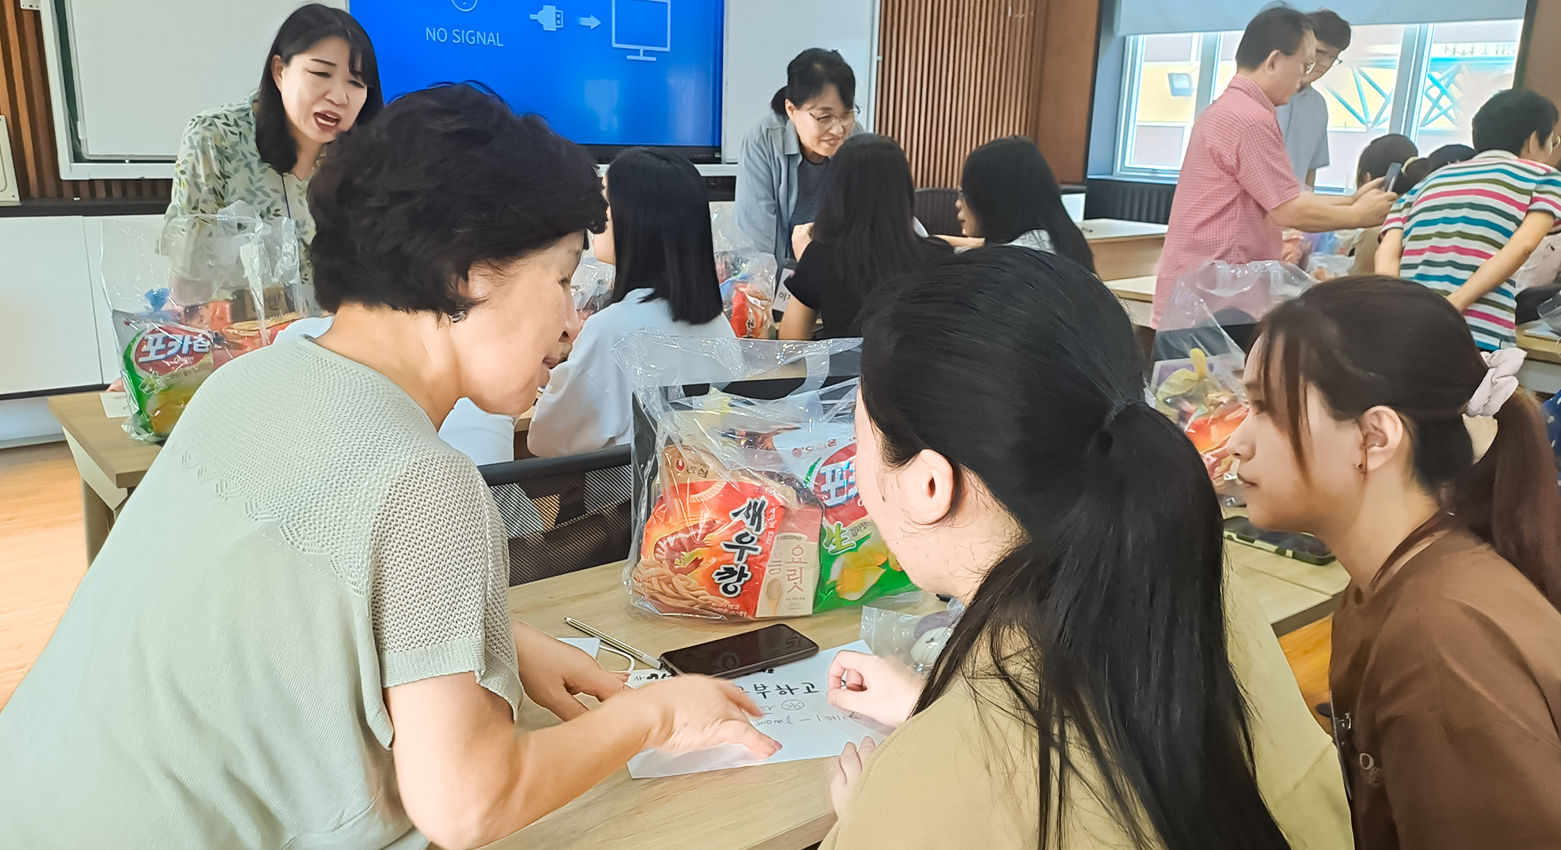 Tiếp đoàn giáo viên thành phố Chong-ju, Hàn Quốc đến thăm và làm việc tại Trường Ngoại ngữ - Du lịch, Trường Đại học Công nghiệp Hà Nội